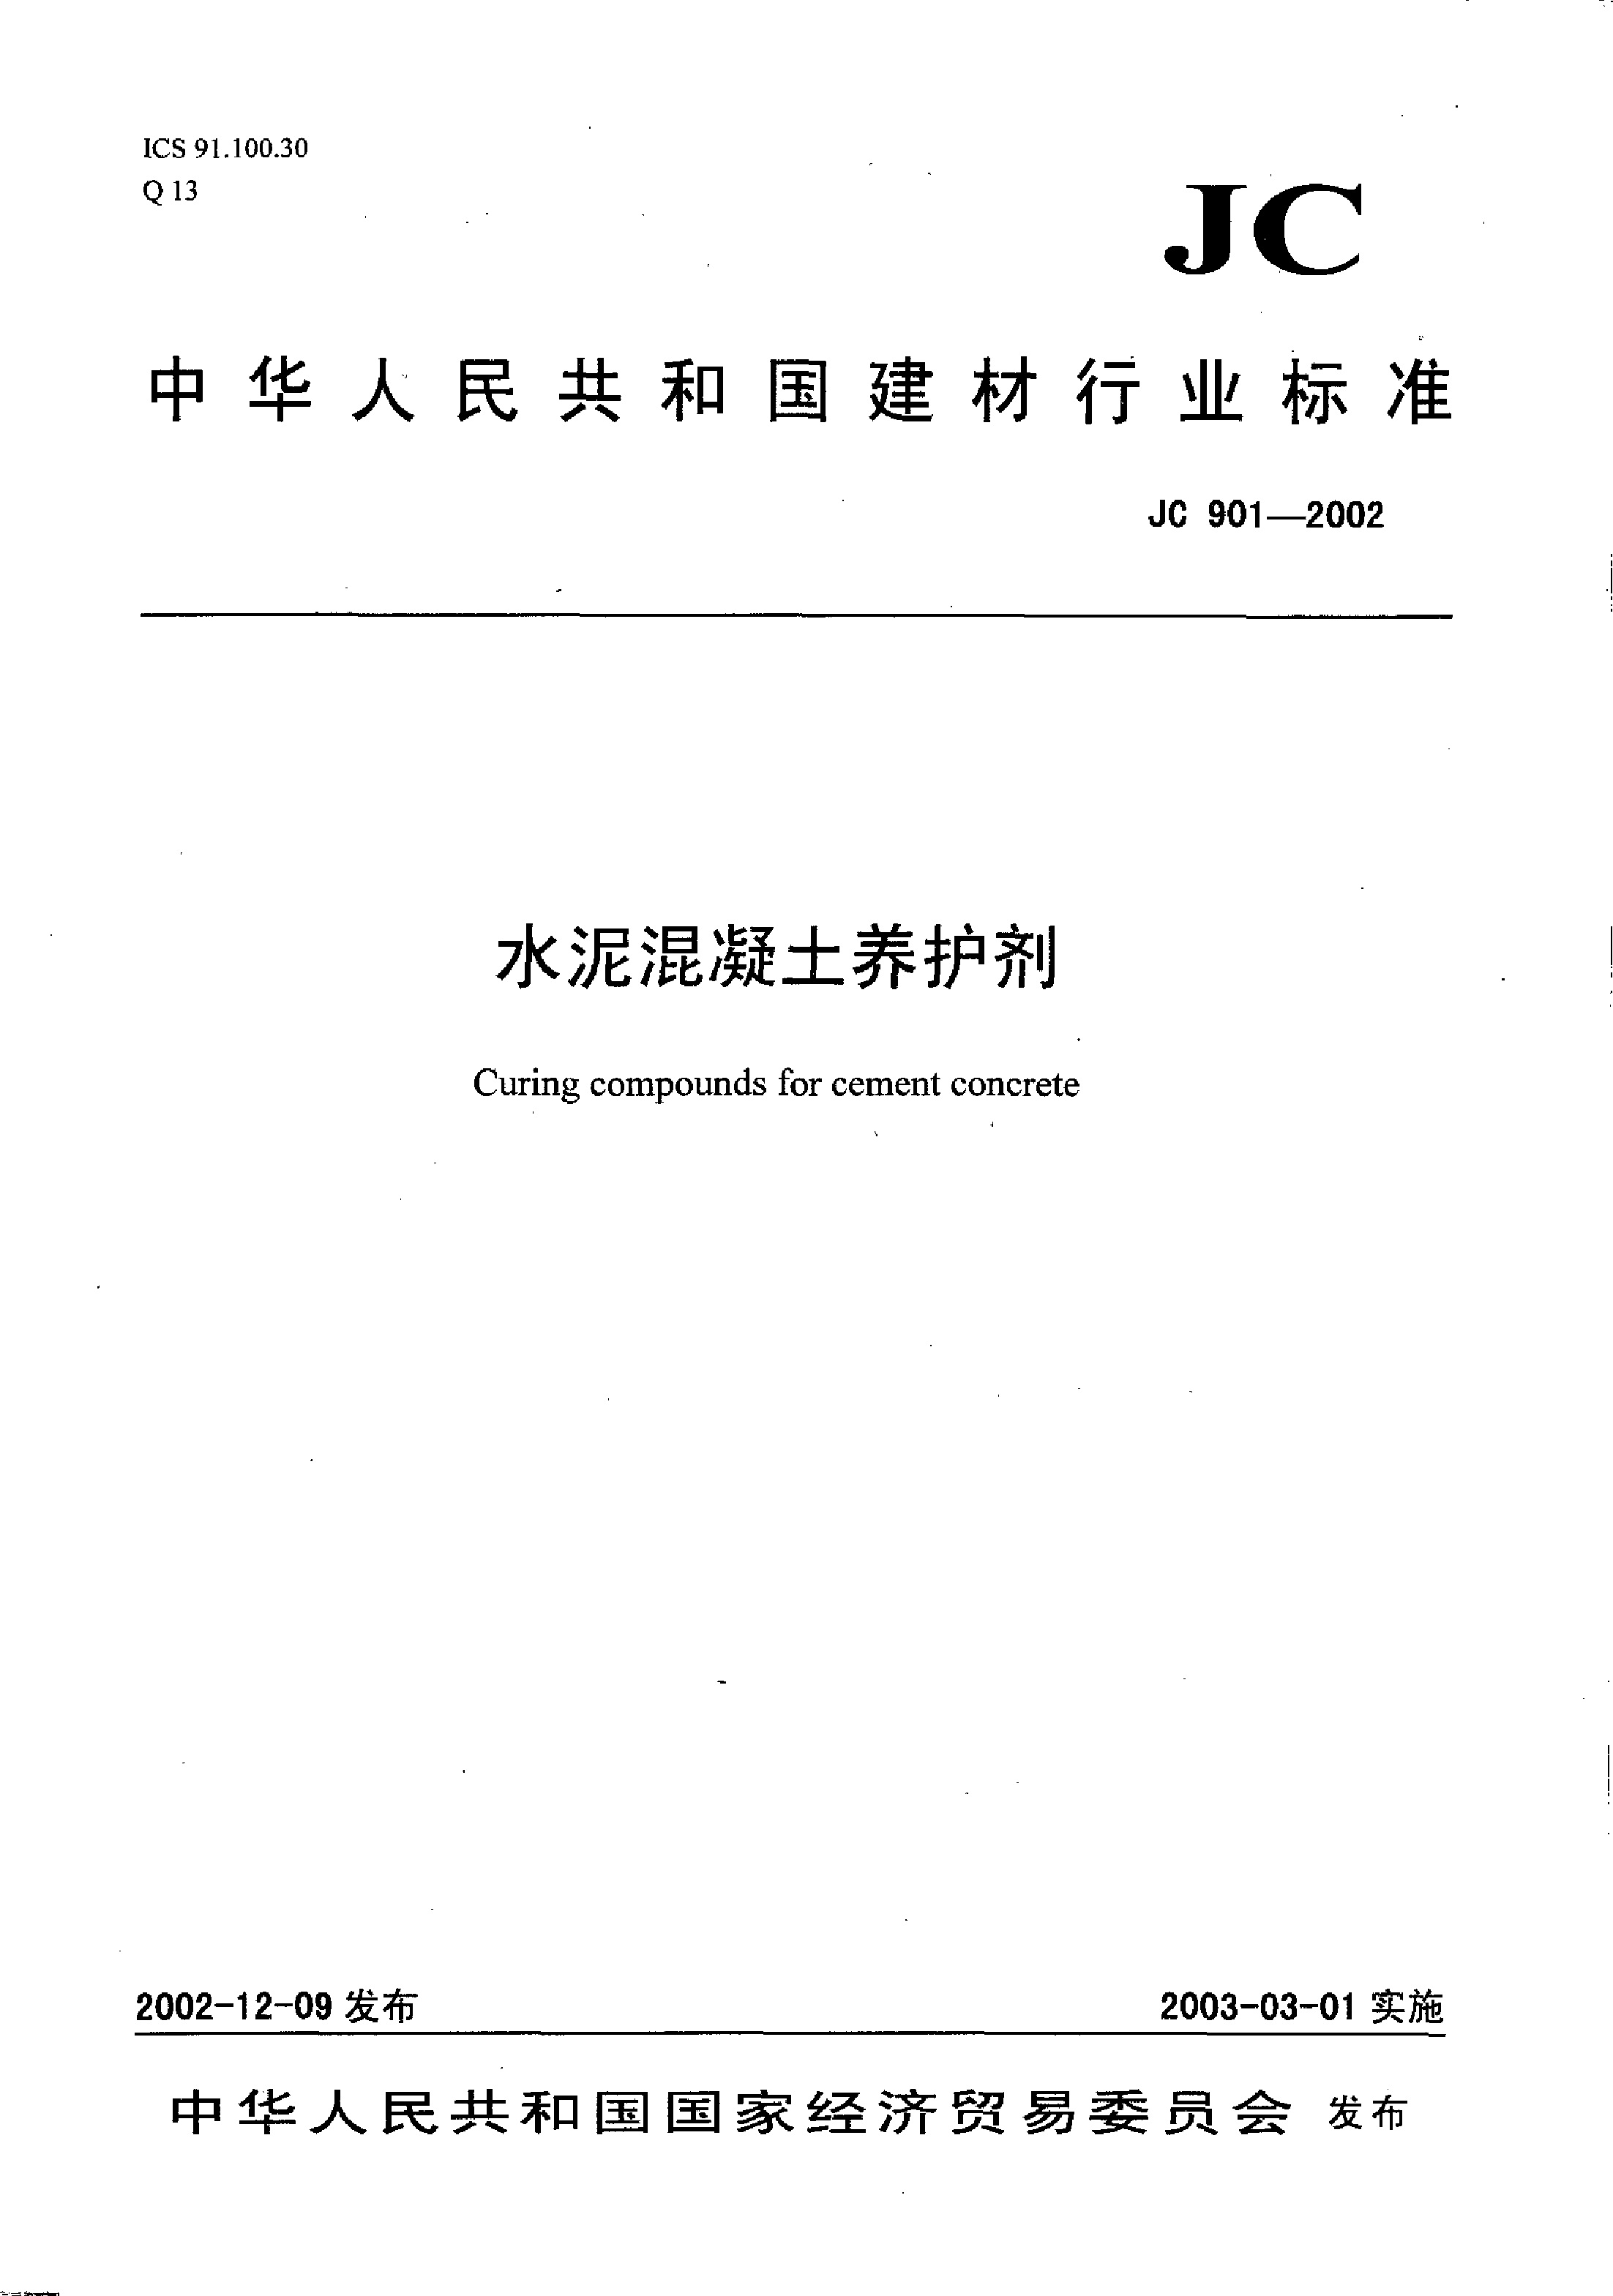 水泥混凝土养护剂/中华人民共和国建材行业标准(JC901-2002)